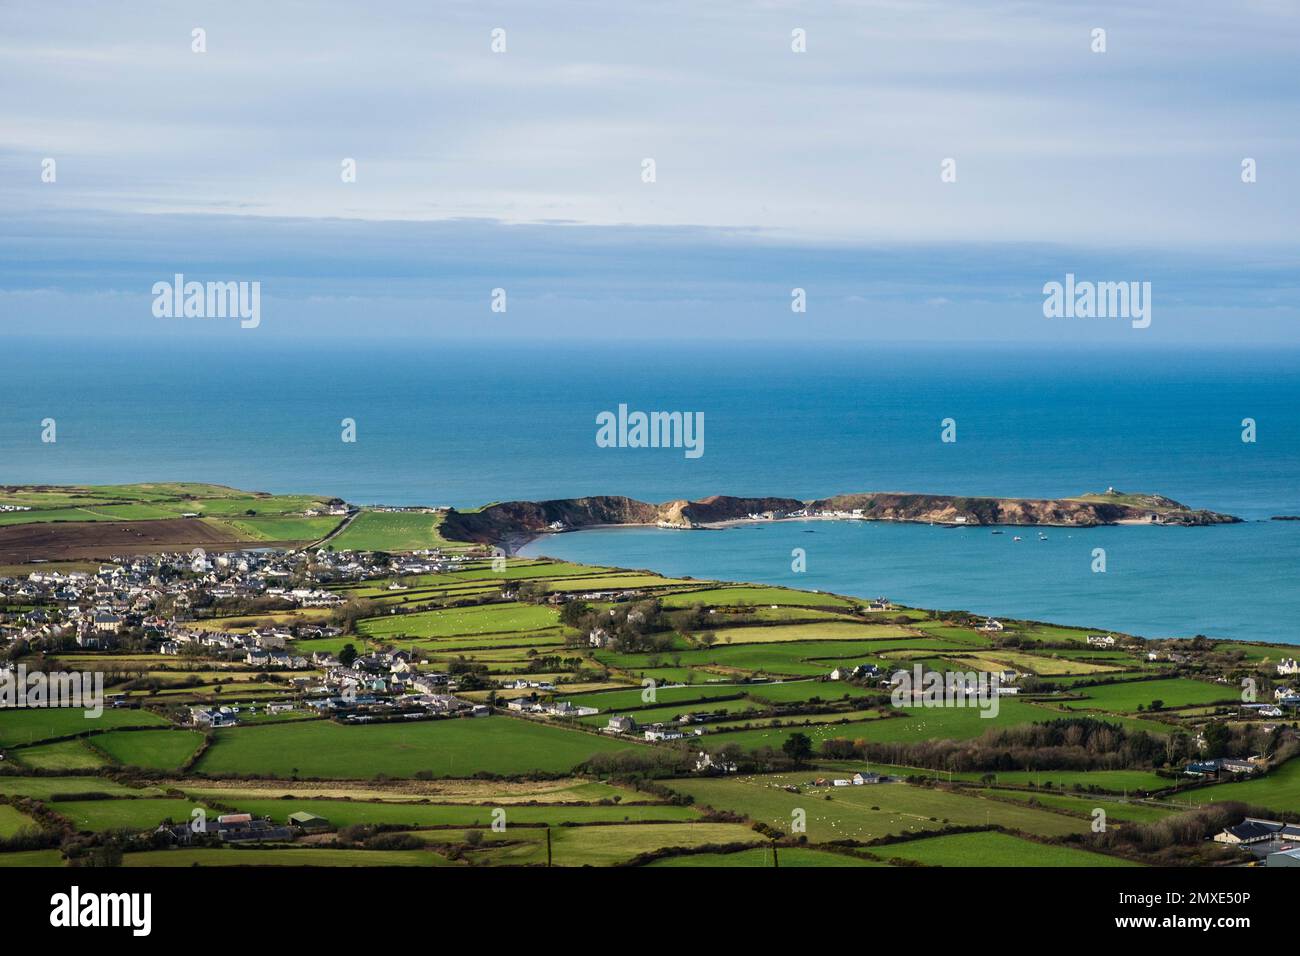 View from Garn Boduan hillside across Morfa Nefyn to Porth Dinllaen on Llyn Peninsula coast. Nefyn, Gwynedd, north Wales, UK, Britain, Europe Stock Photo